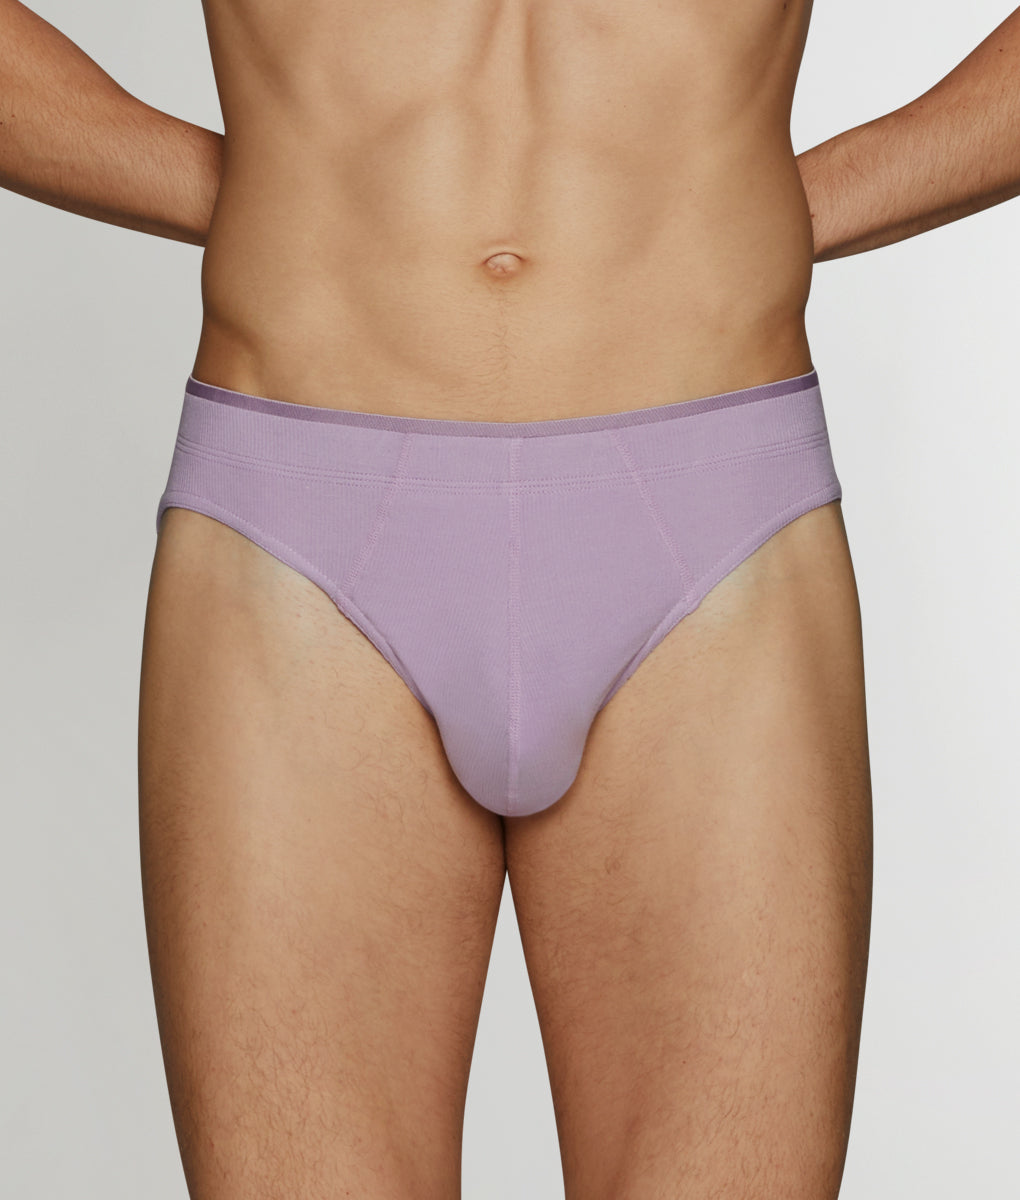 2(X)IST mens briefs cotton classic fit underwear NAVY BLUE sz:XL -RN97404